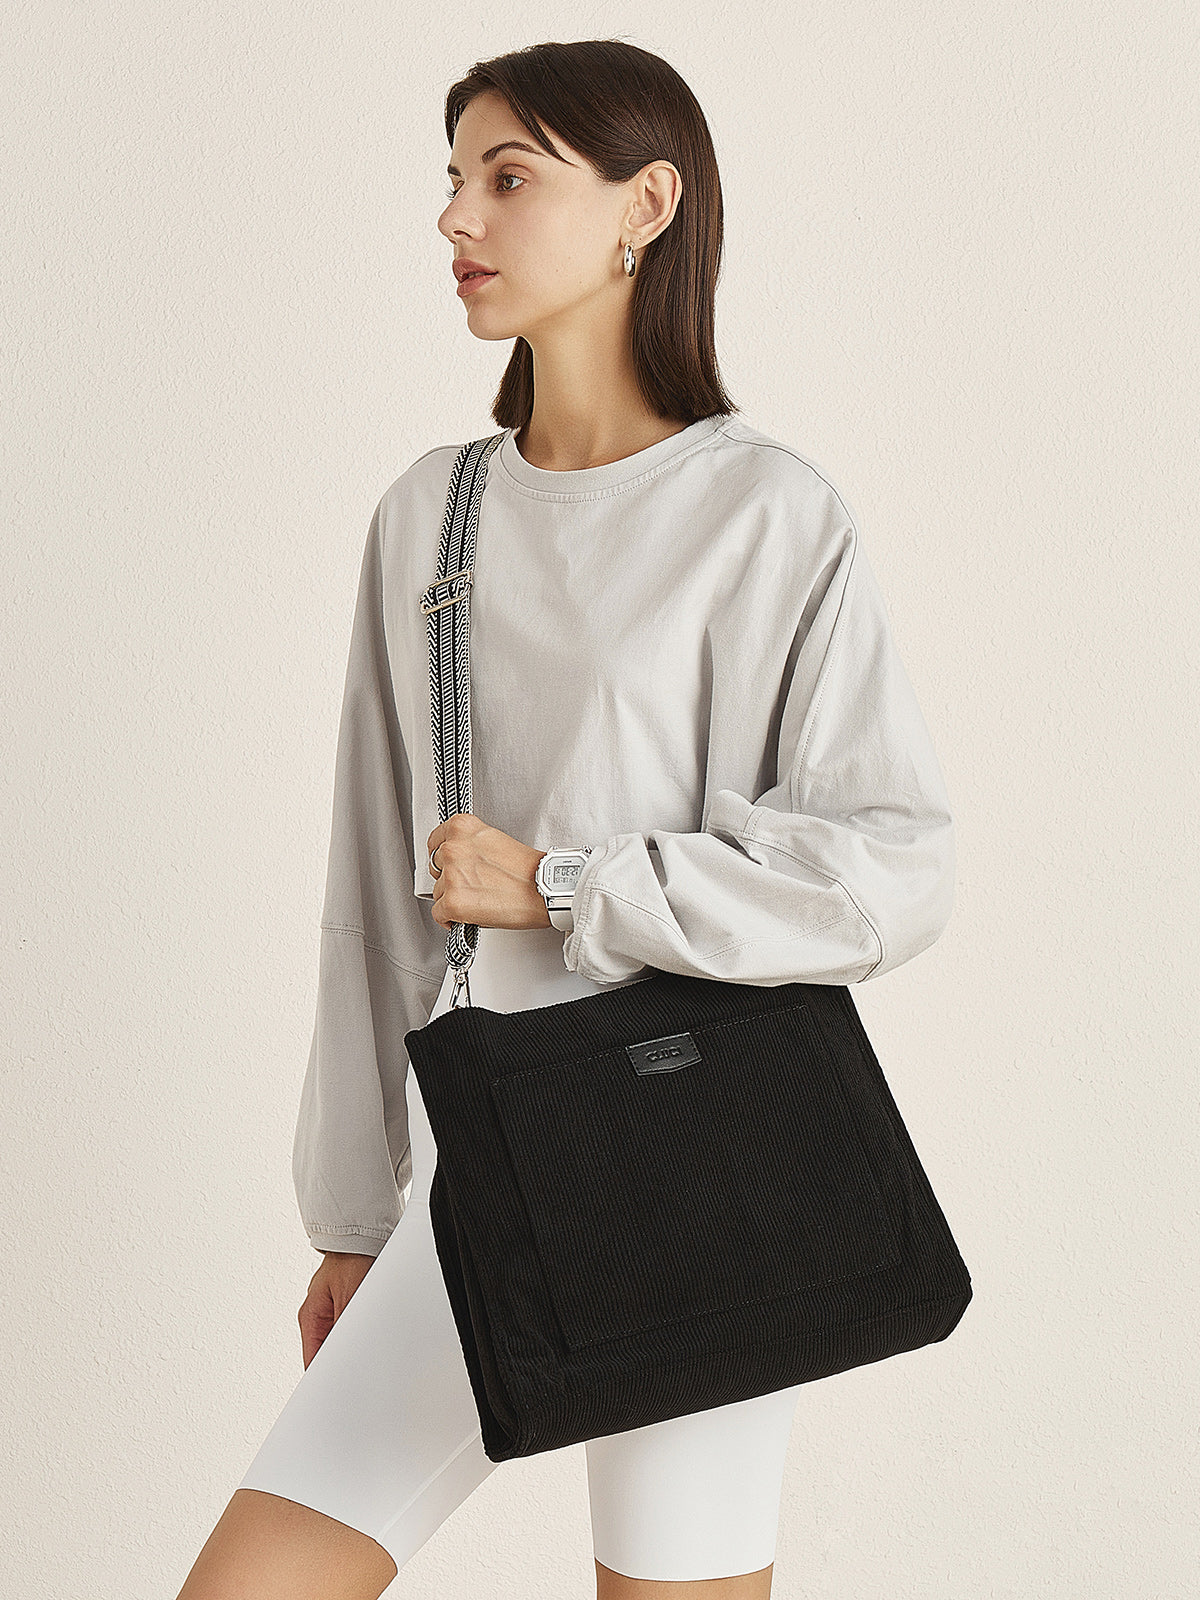 Wide Purse Strap Crossbody Purses Adjustable Replacement Shoulder Handbag Strap—Black